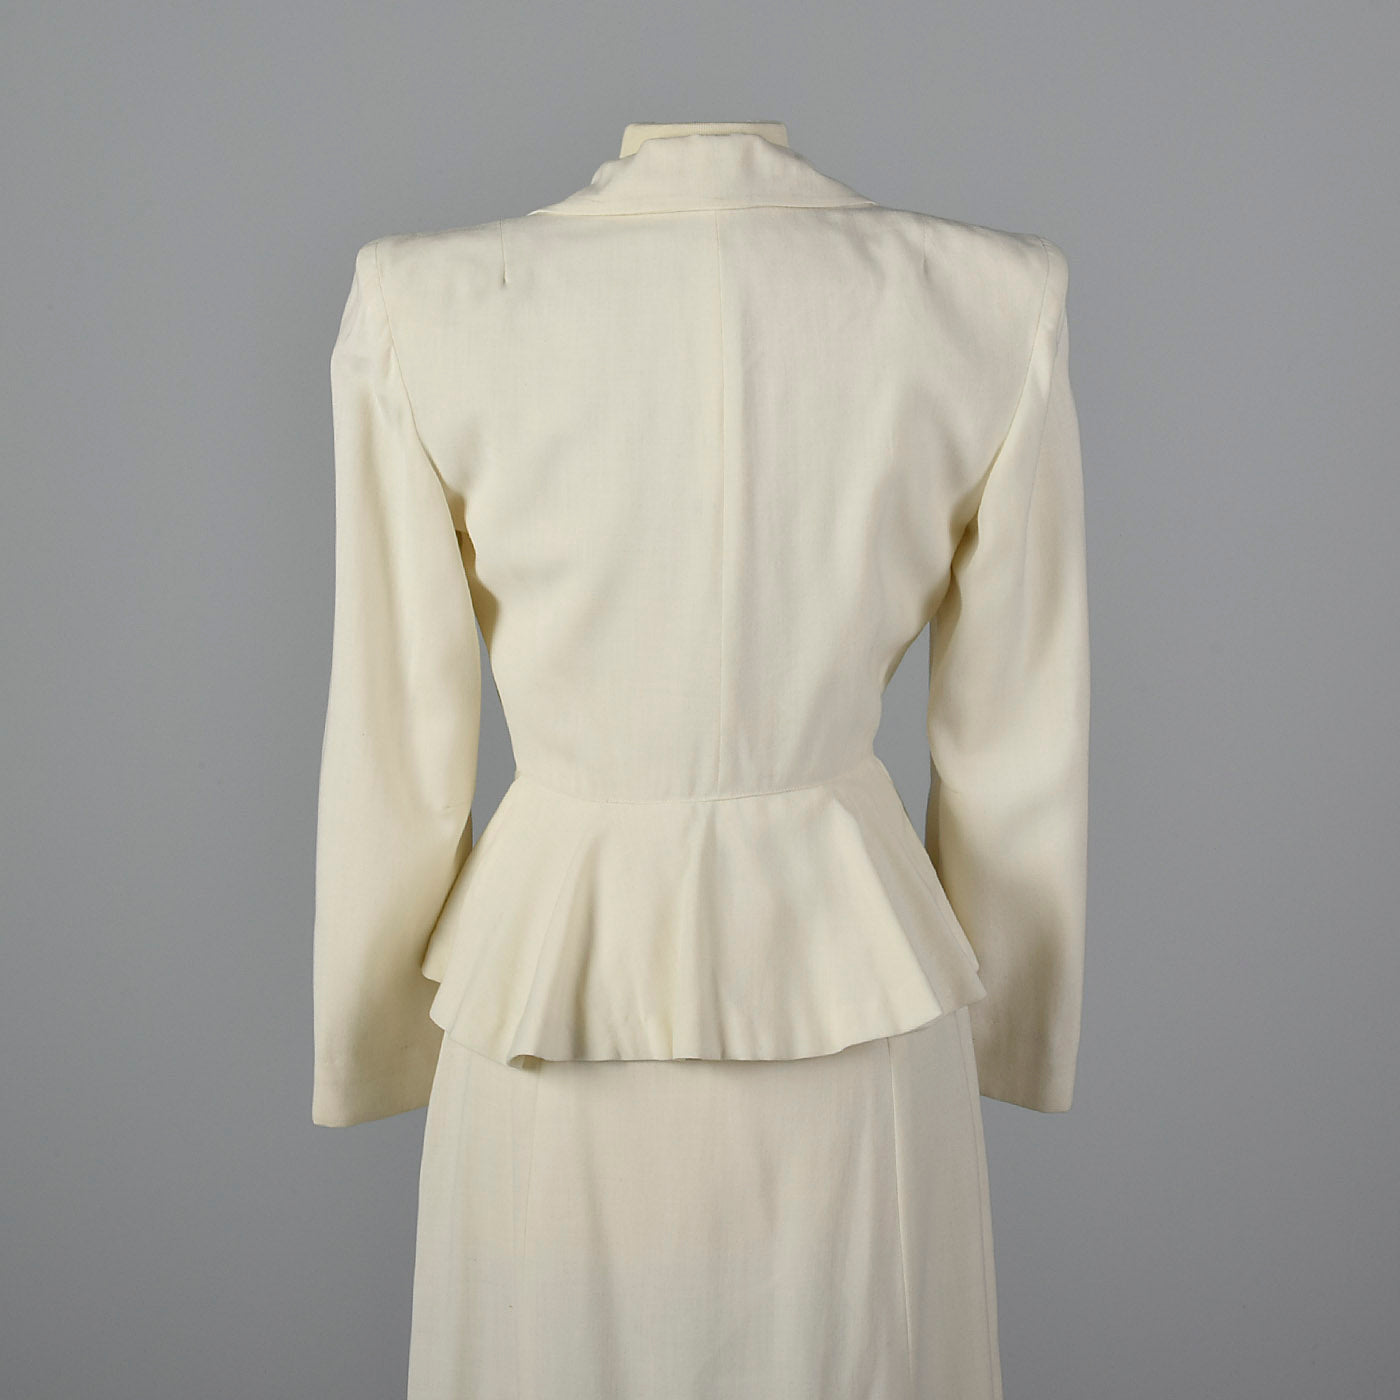 1940s Deadstock White Wool Suit